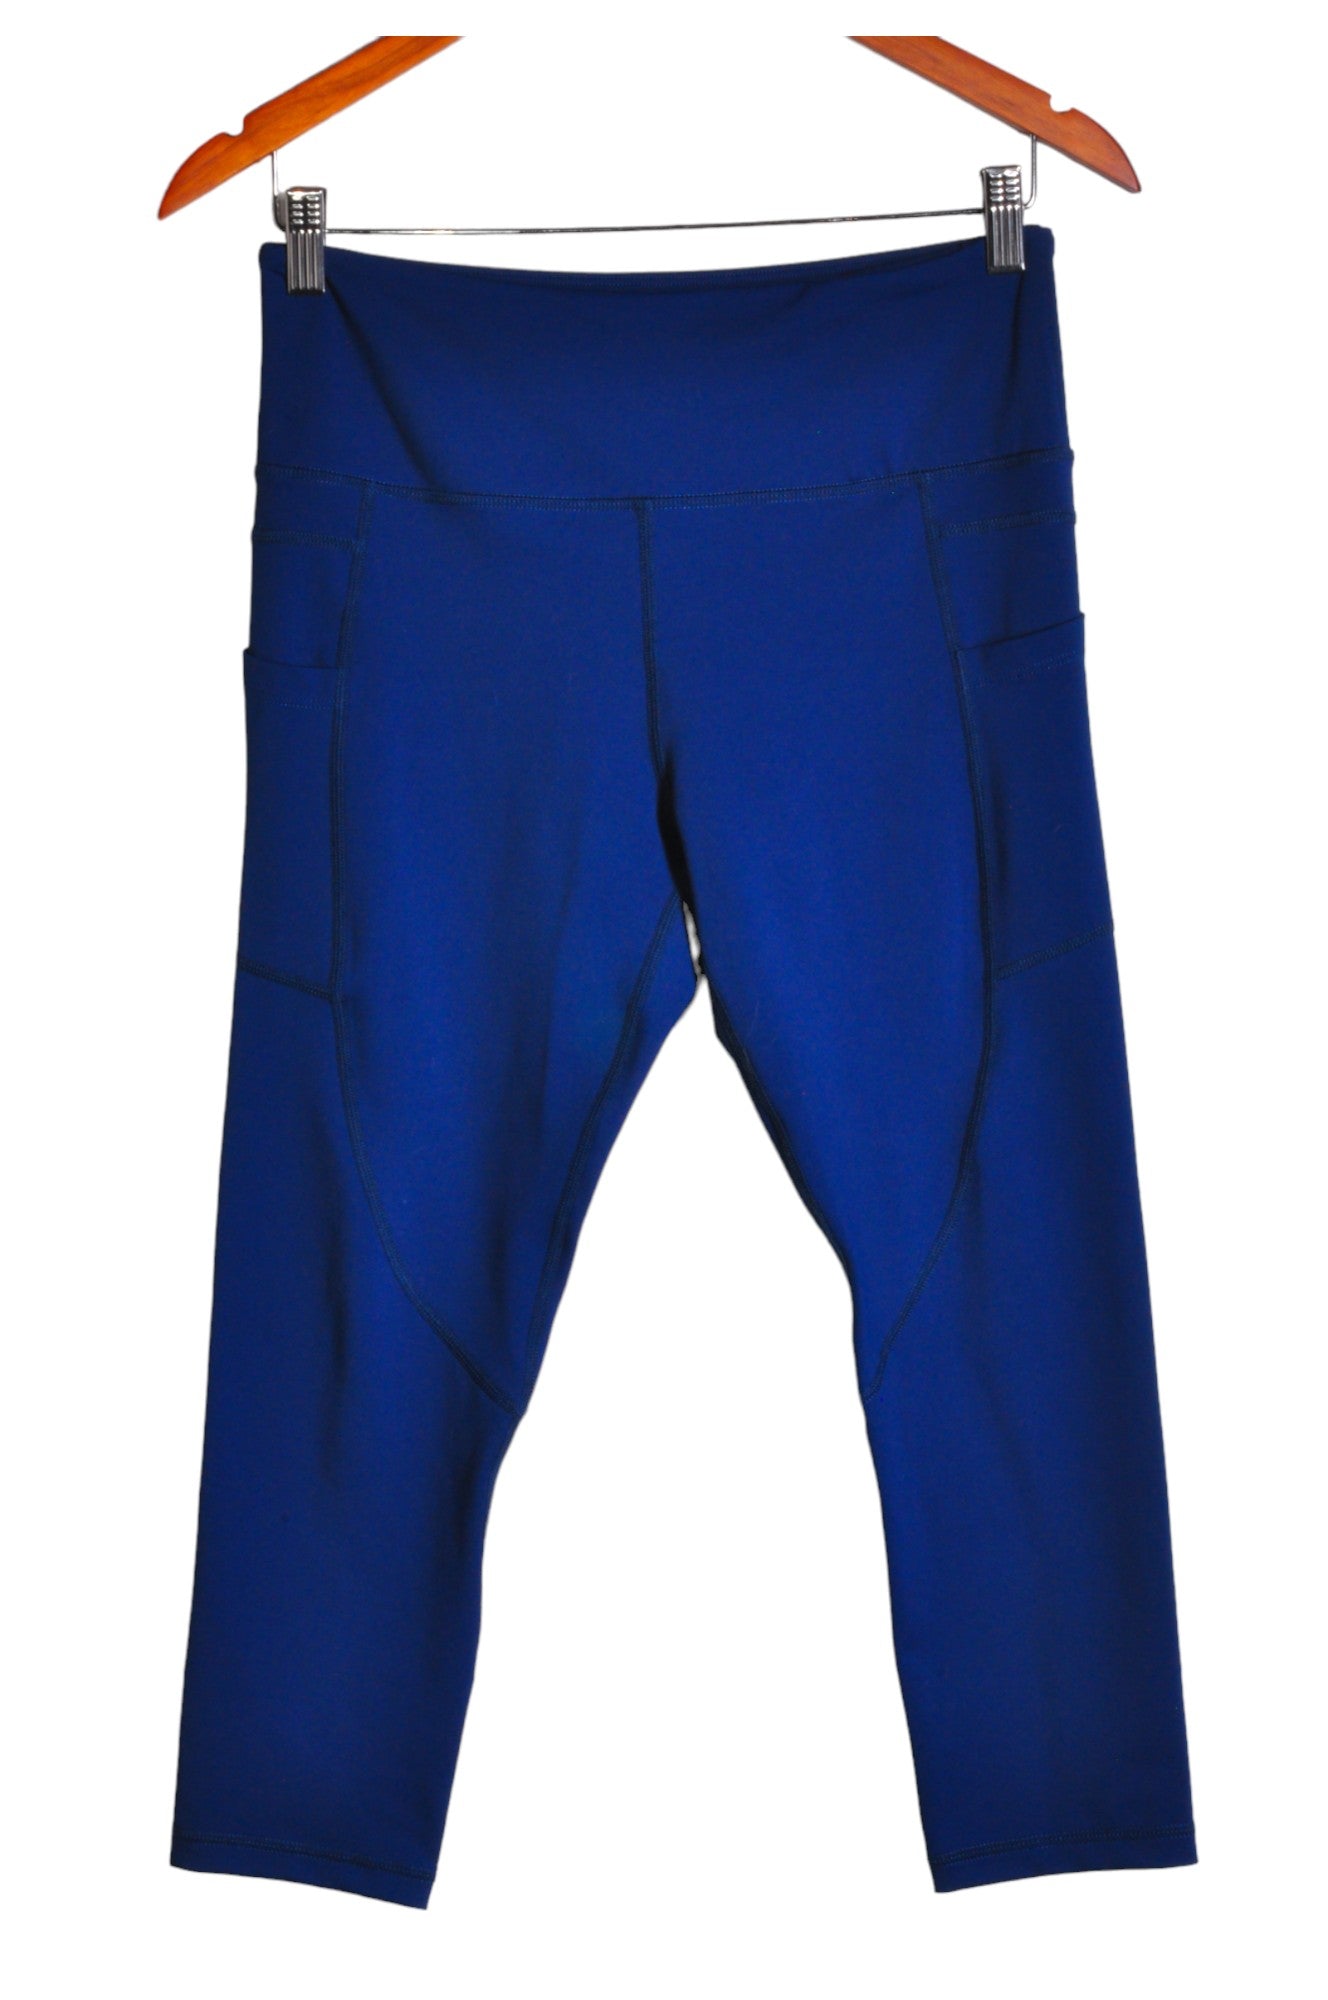 ZYIA ACTIVE Women Activewear Leggings Regular fit in Blue - Size 8 | 10.4 $ KOOP